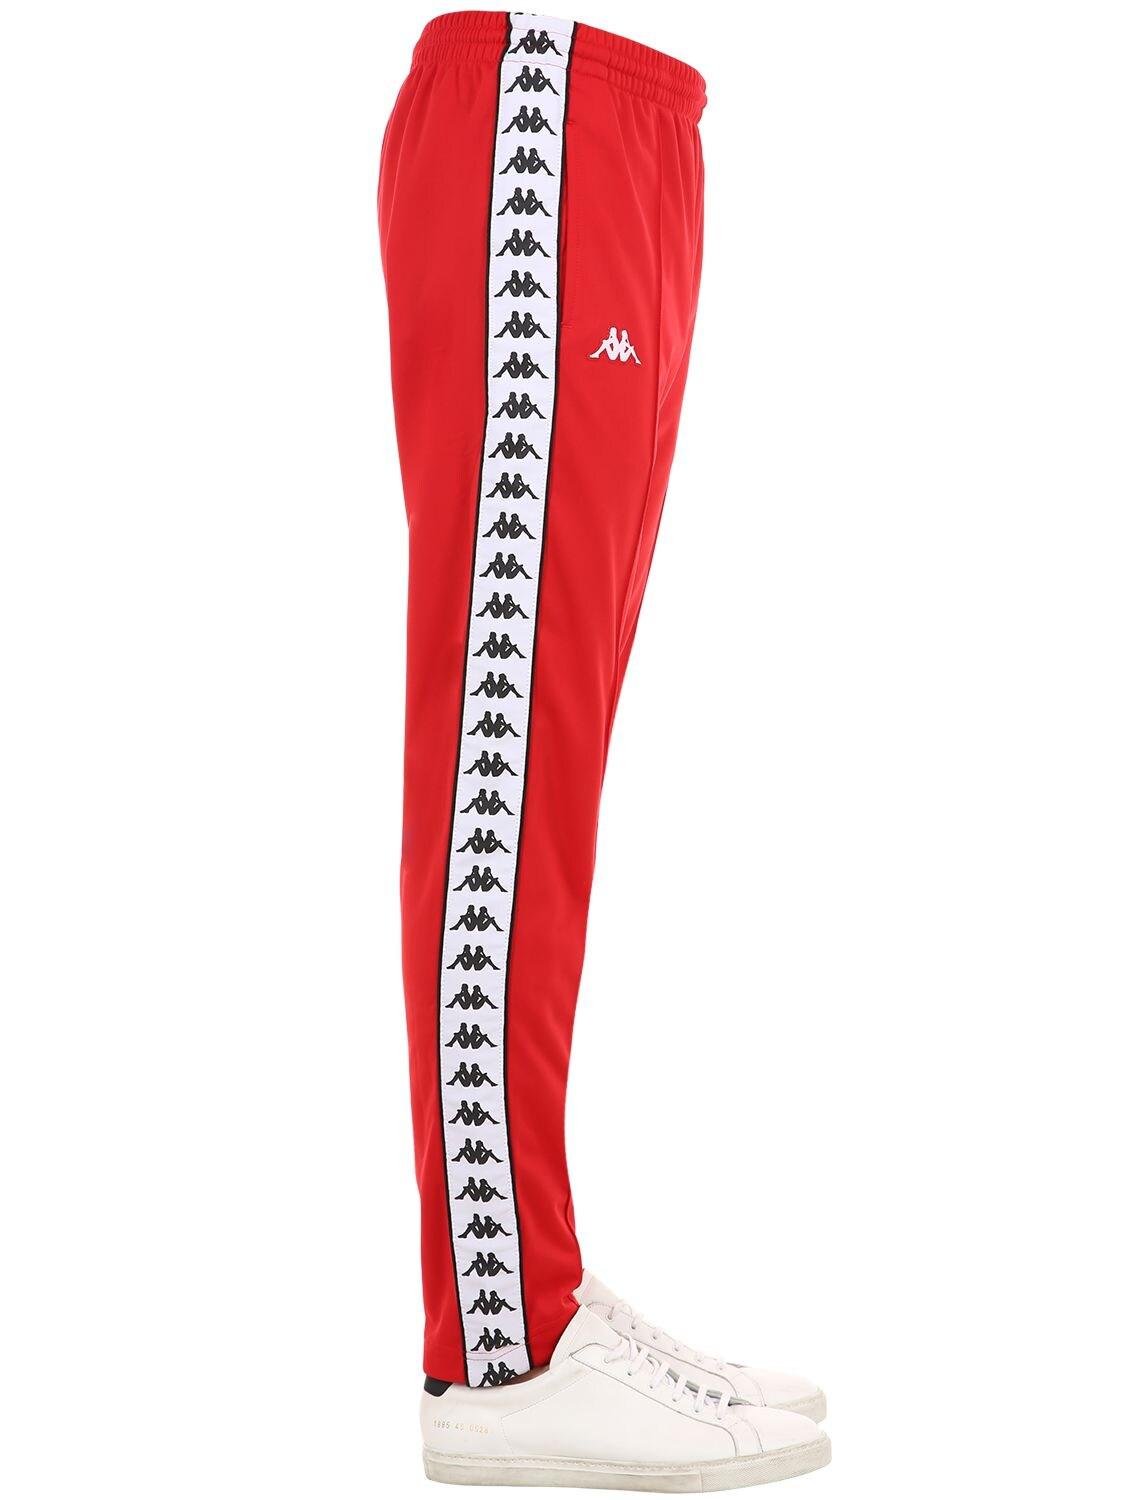 Kappa Banda Astoria Slim Fit Pants in Red for Men - Lyst